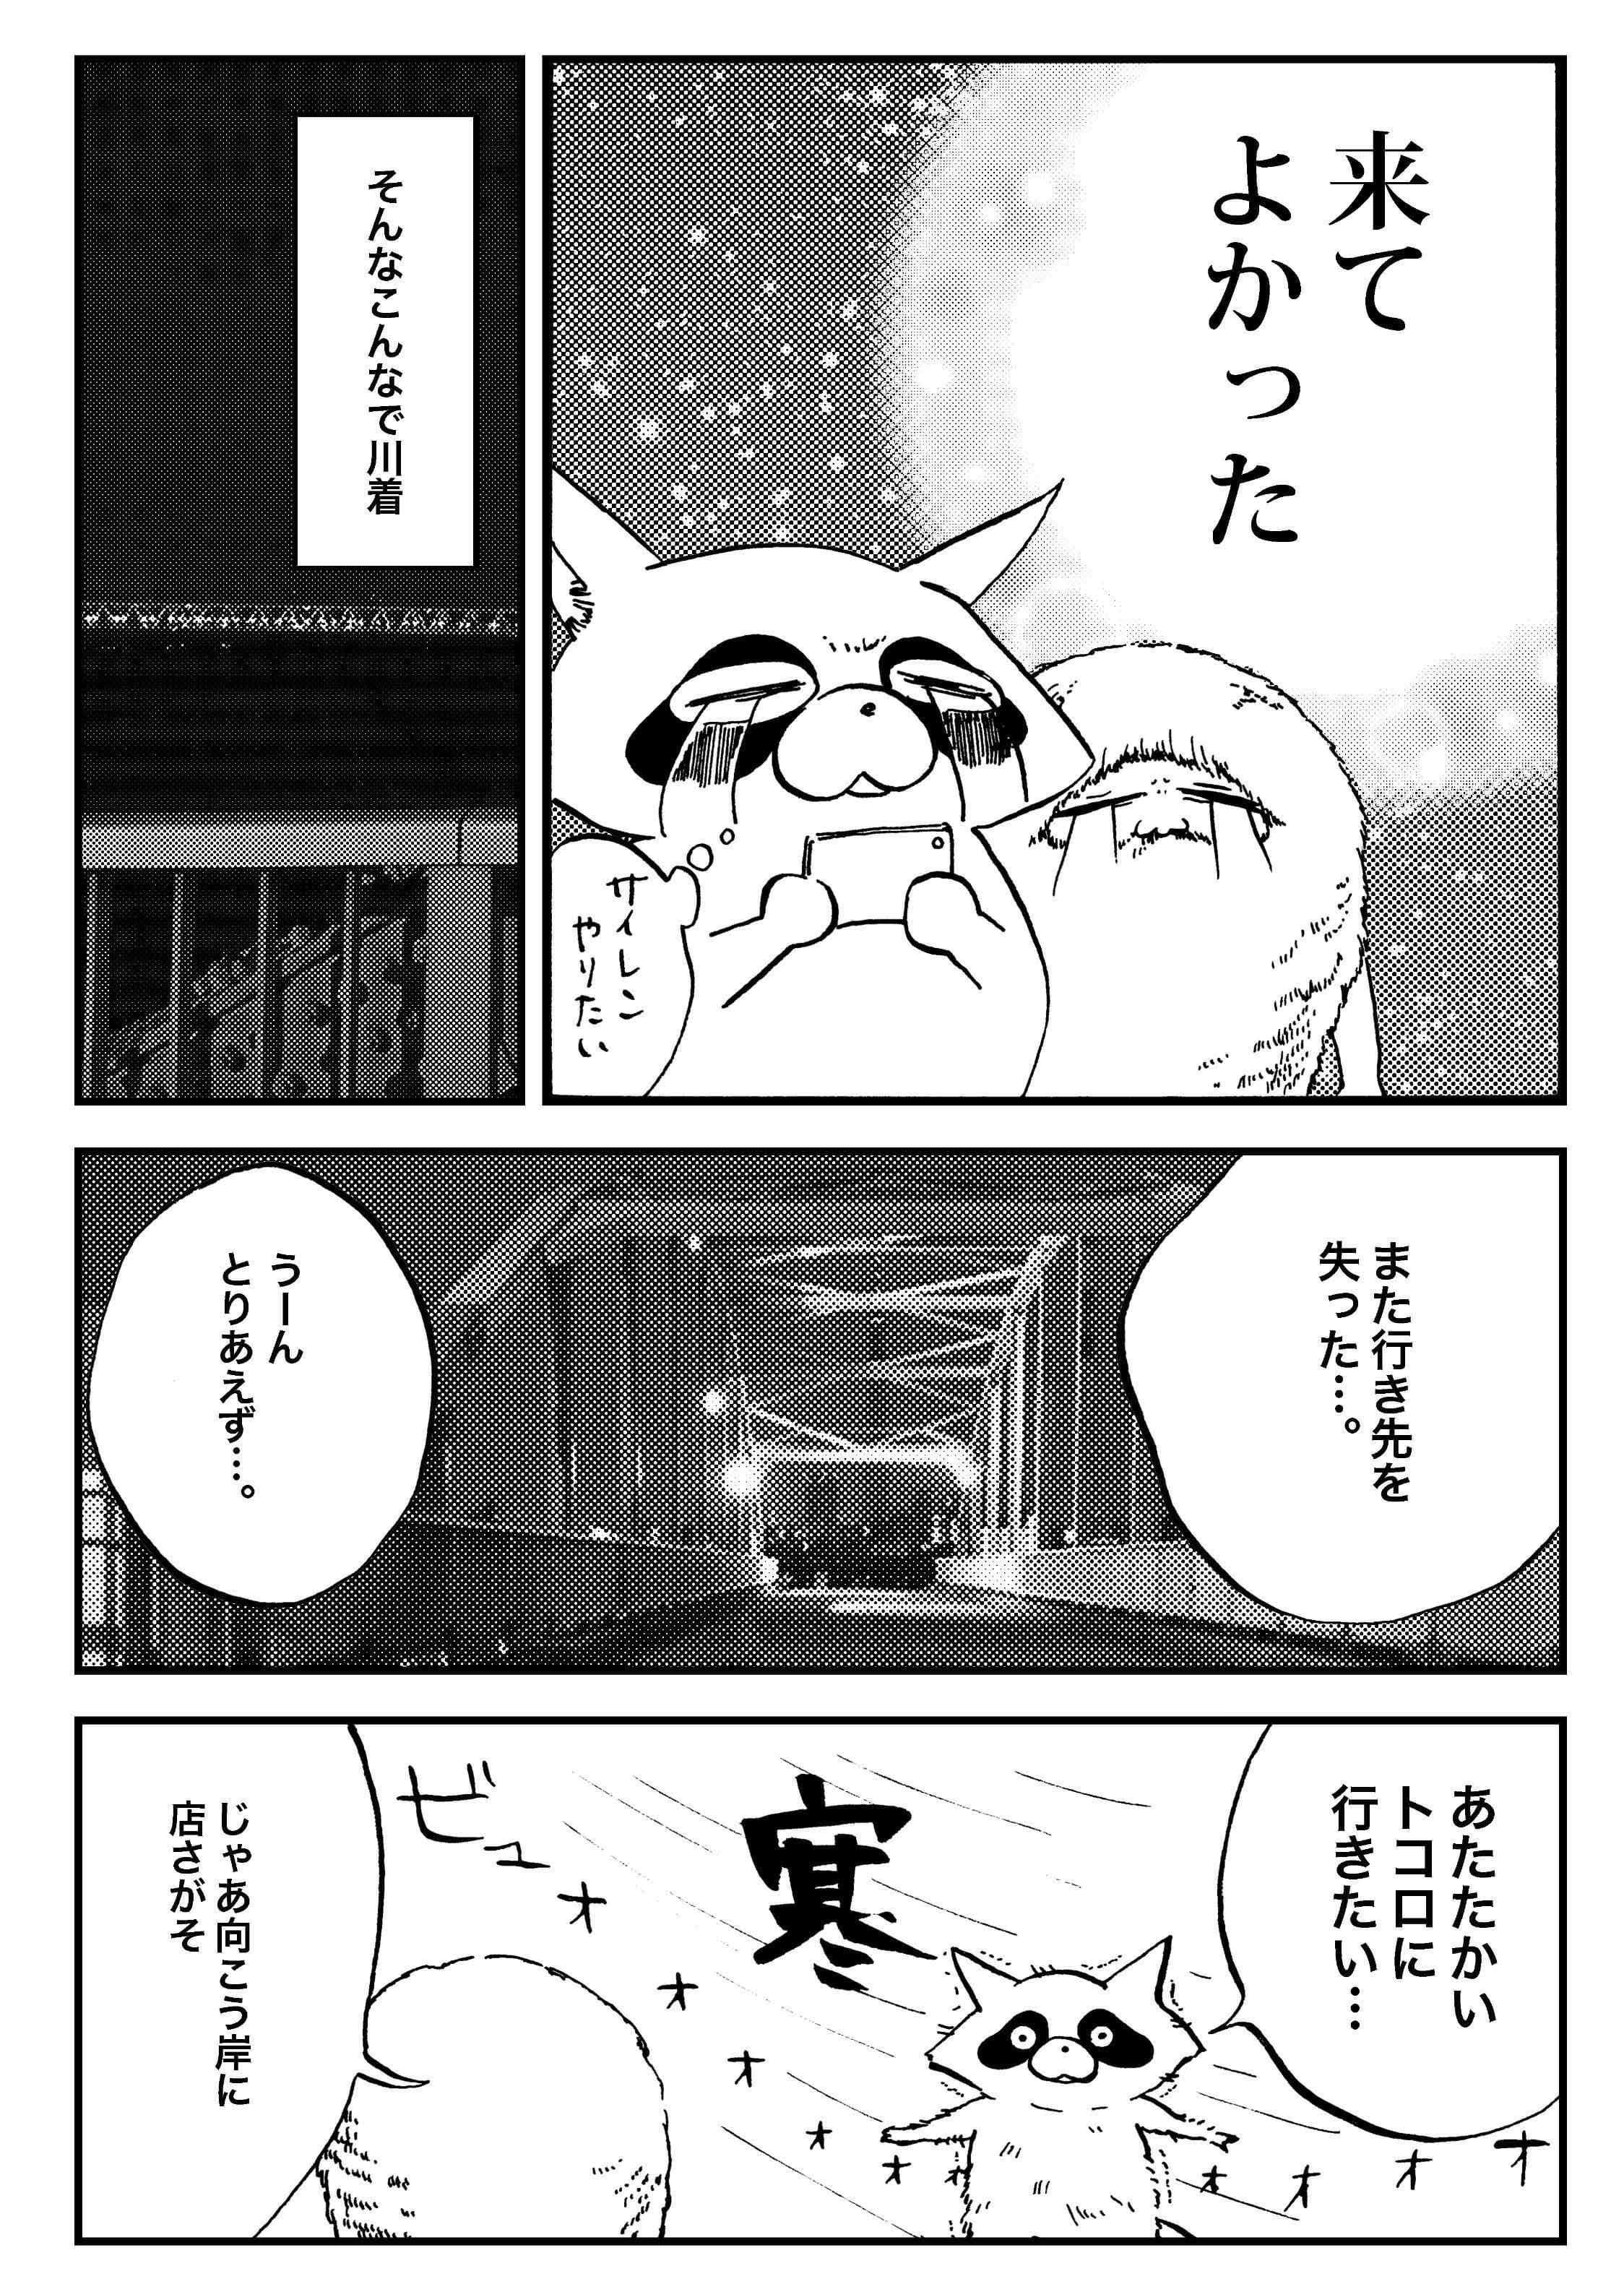 『夜活～夜の街を散歩した日記漫画～』／森凡 １５.jpg